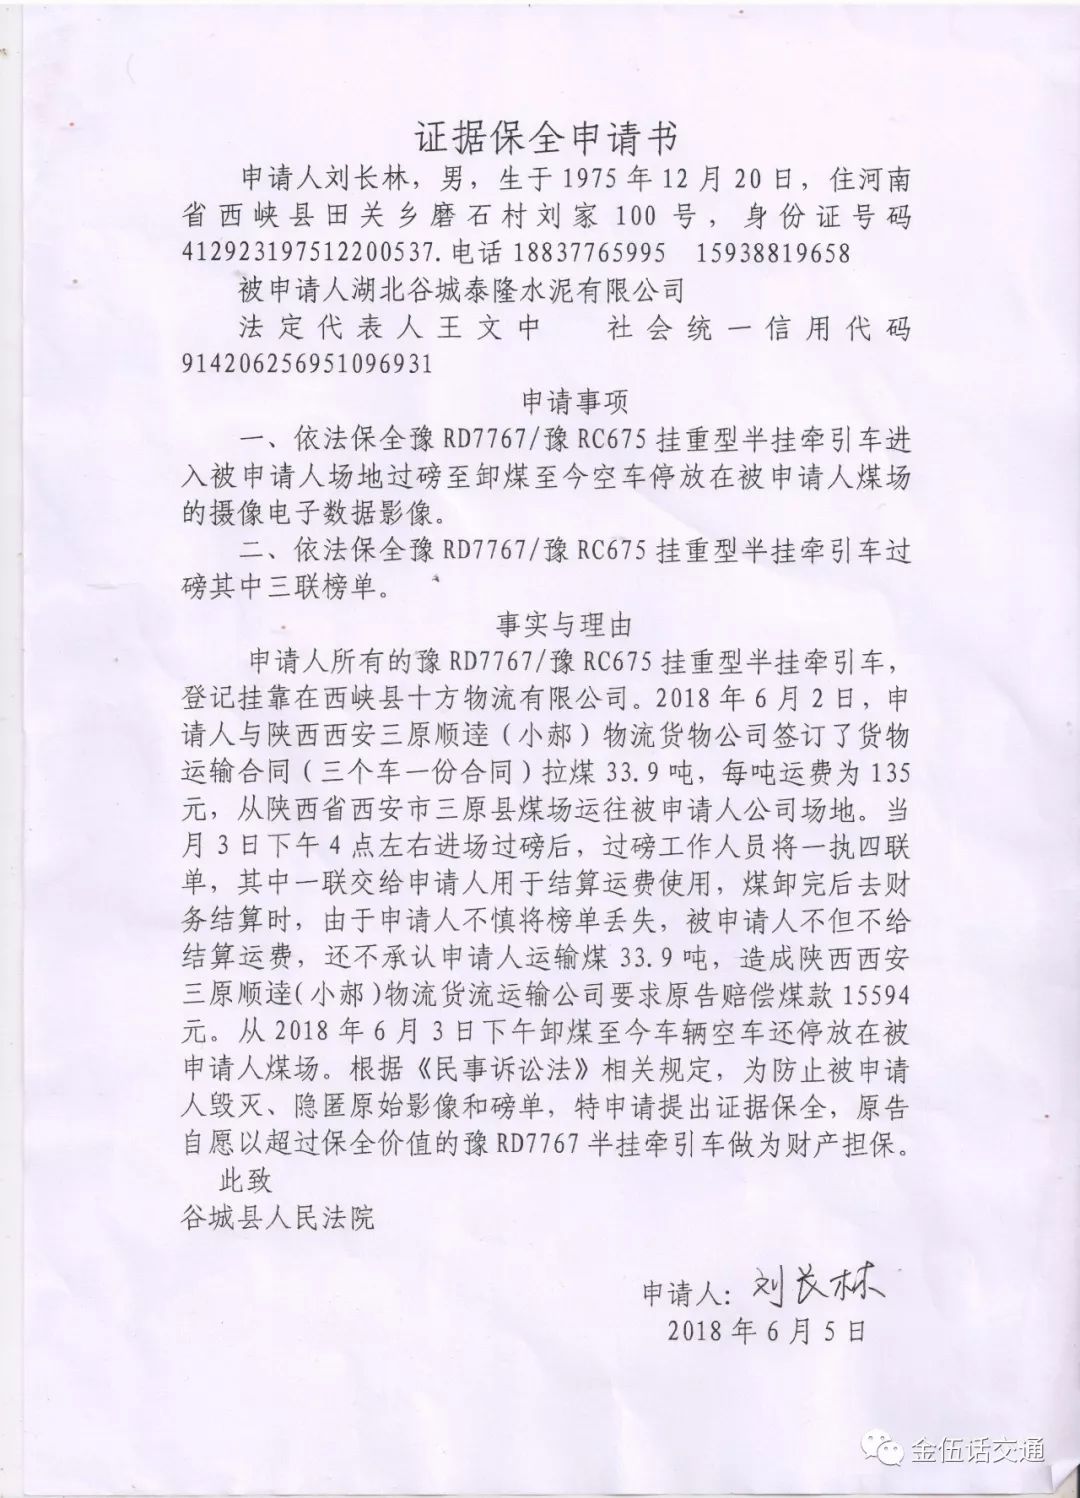 湖北谷城泰隆水泥厂:磅单丢失遭眛帐 证据保全获法院支持